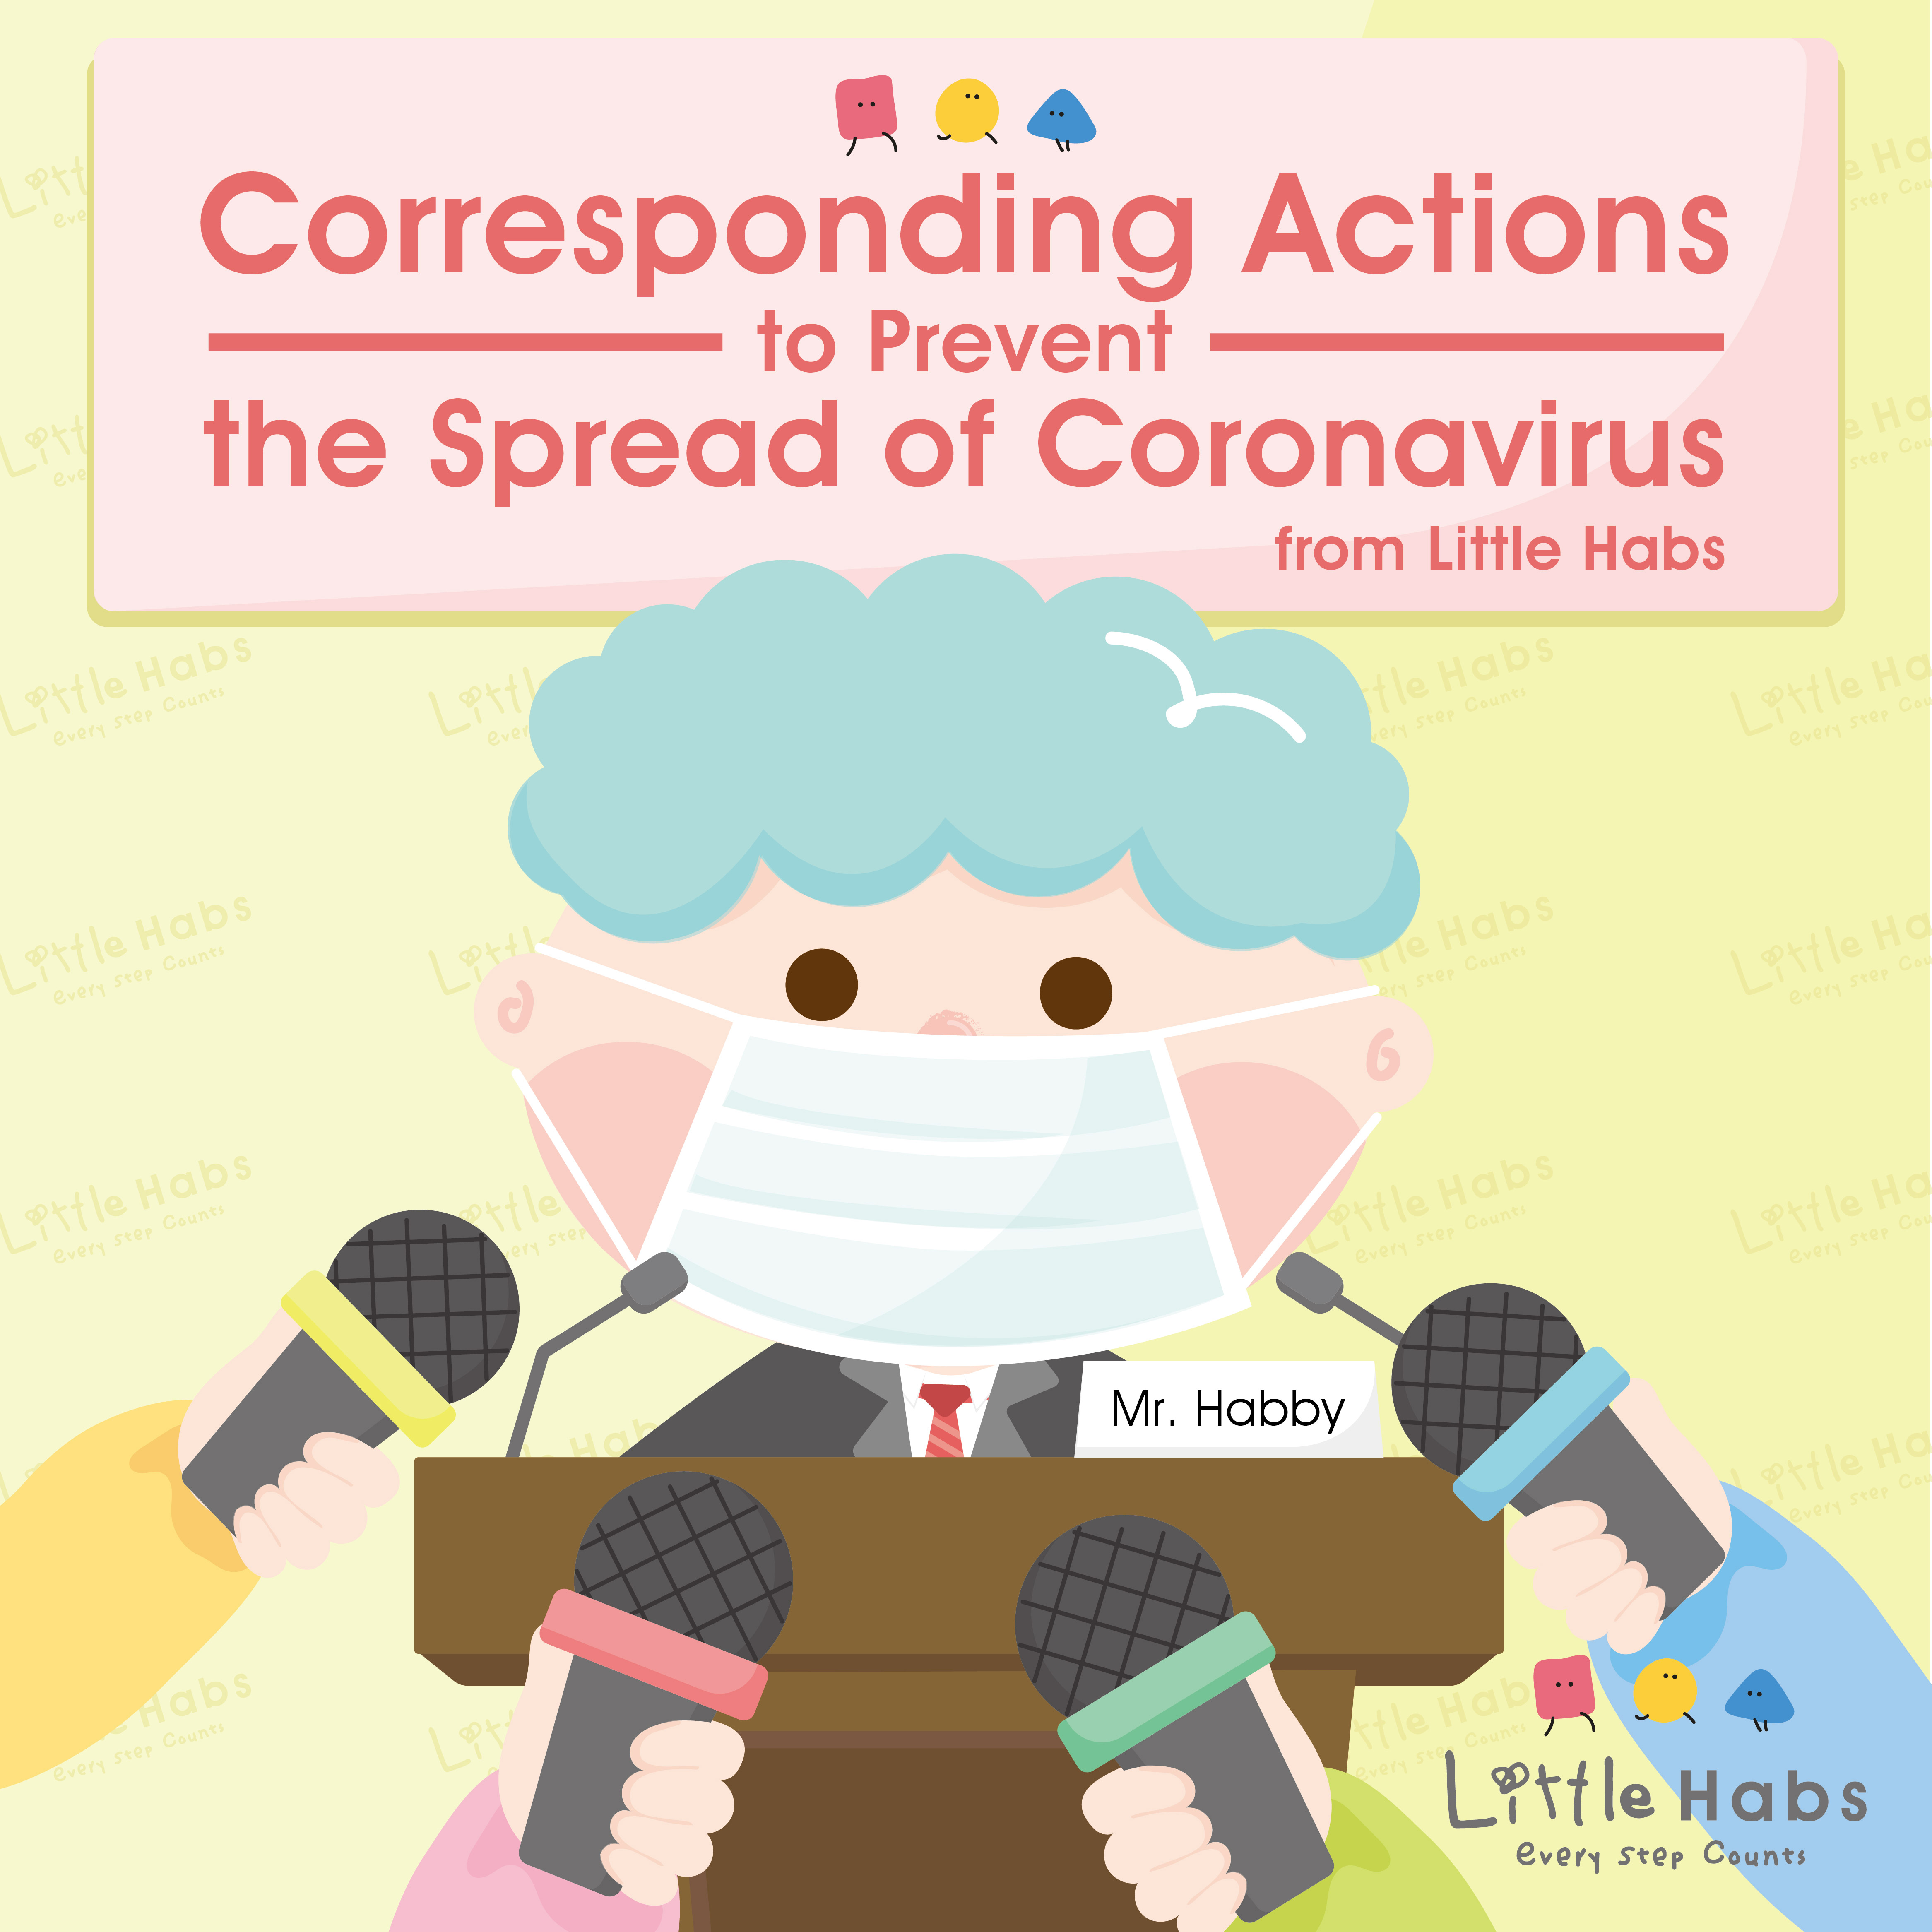 Corresponding Actions to Prevent the Spread of Coronavirus